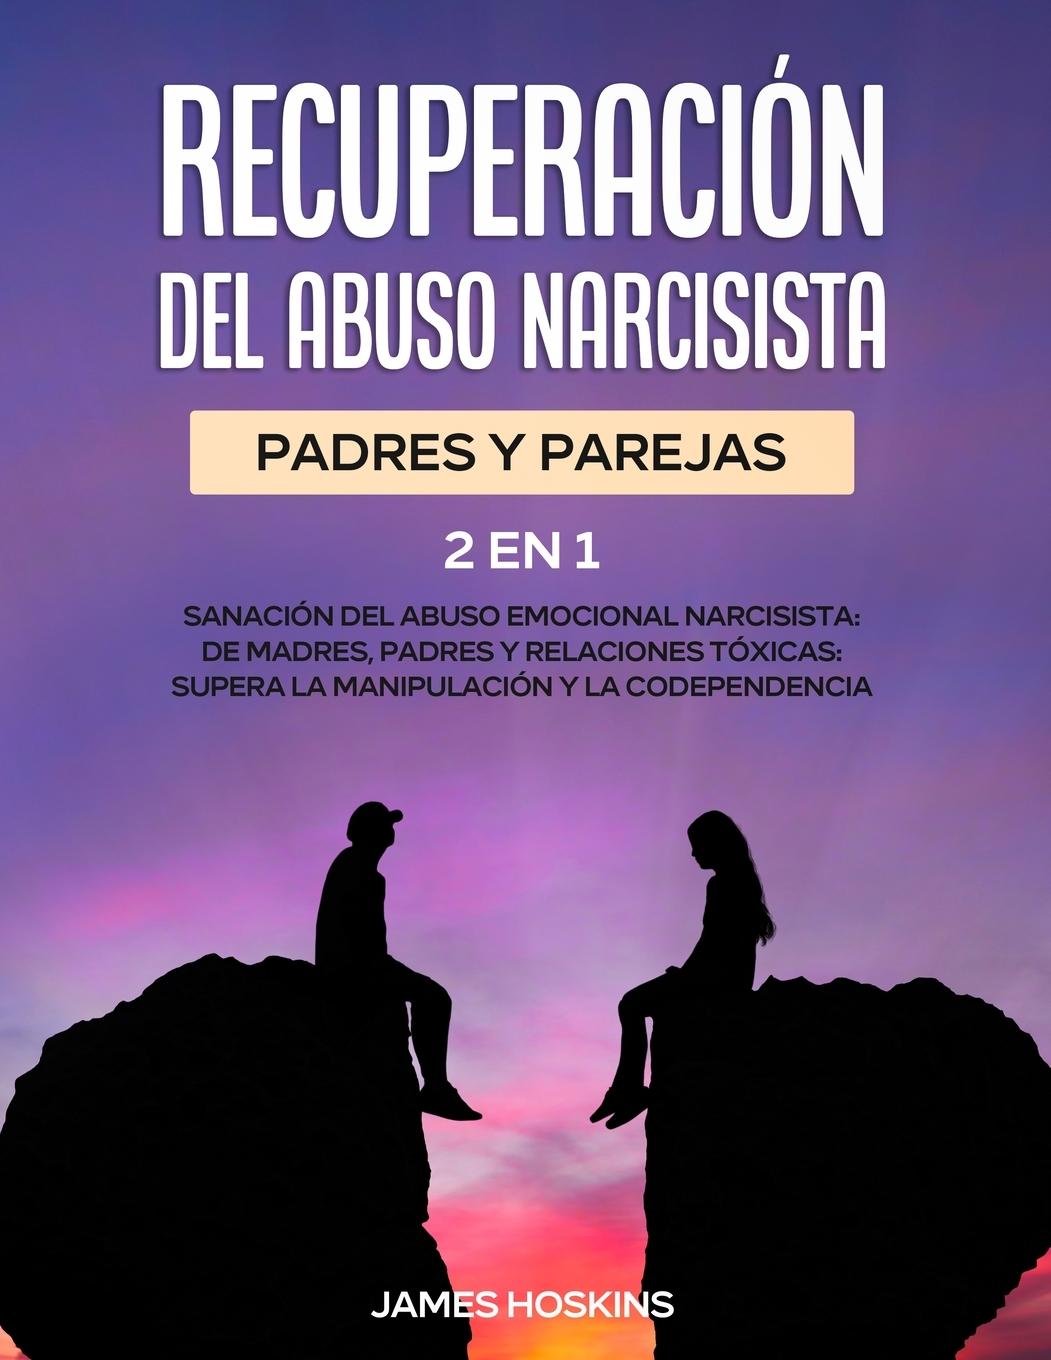 Carte Recuperacion del Abuso Narcisista (2En1) 